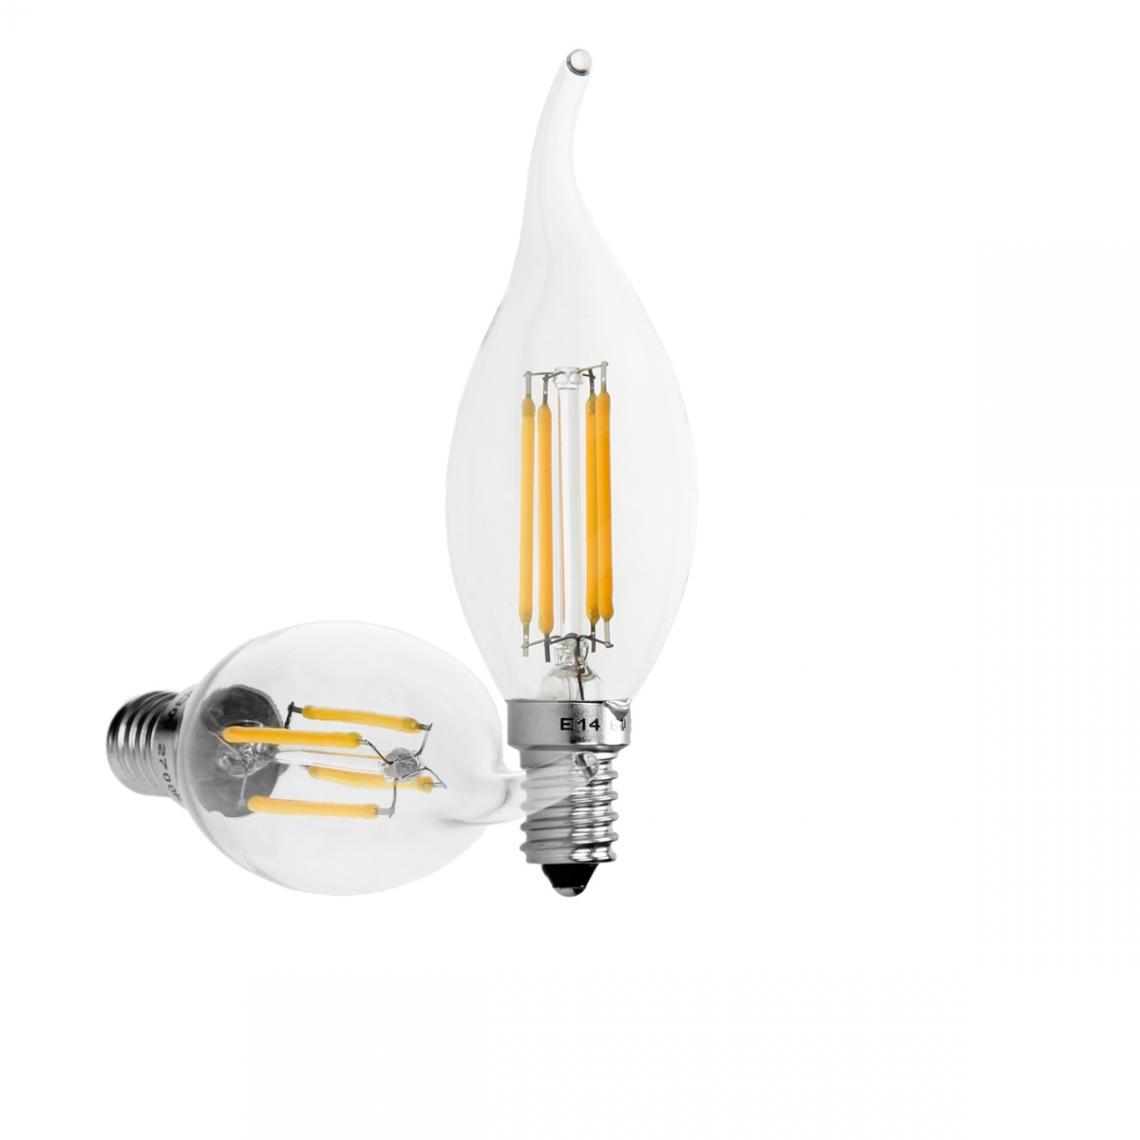 Ecd Germany - 4 x Lampe LED rafale de vent filament de bougie E14 4W blanc chaud - Ampoules LED